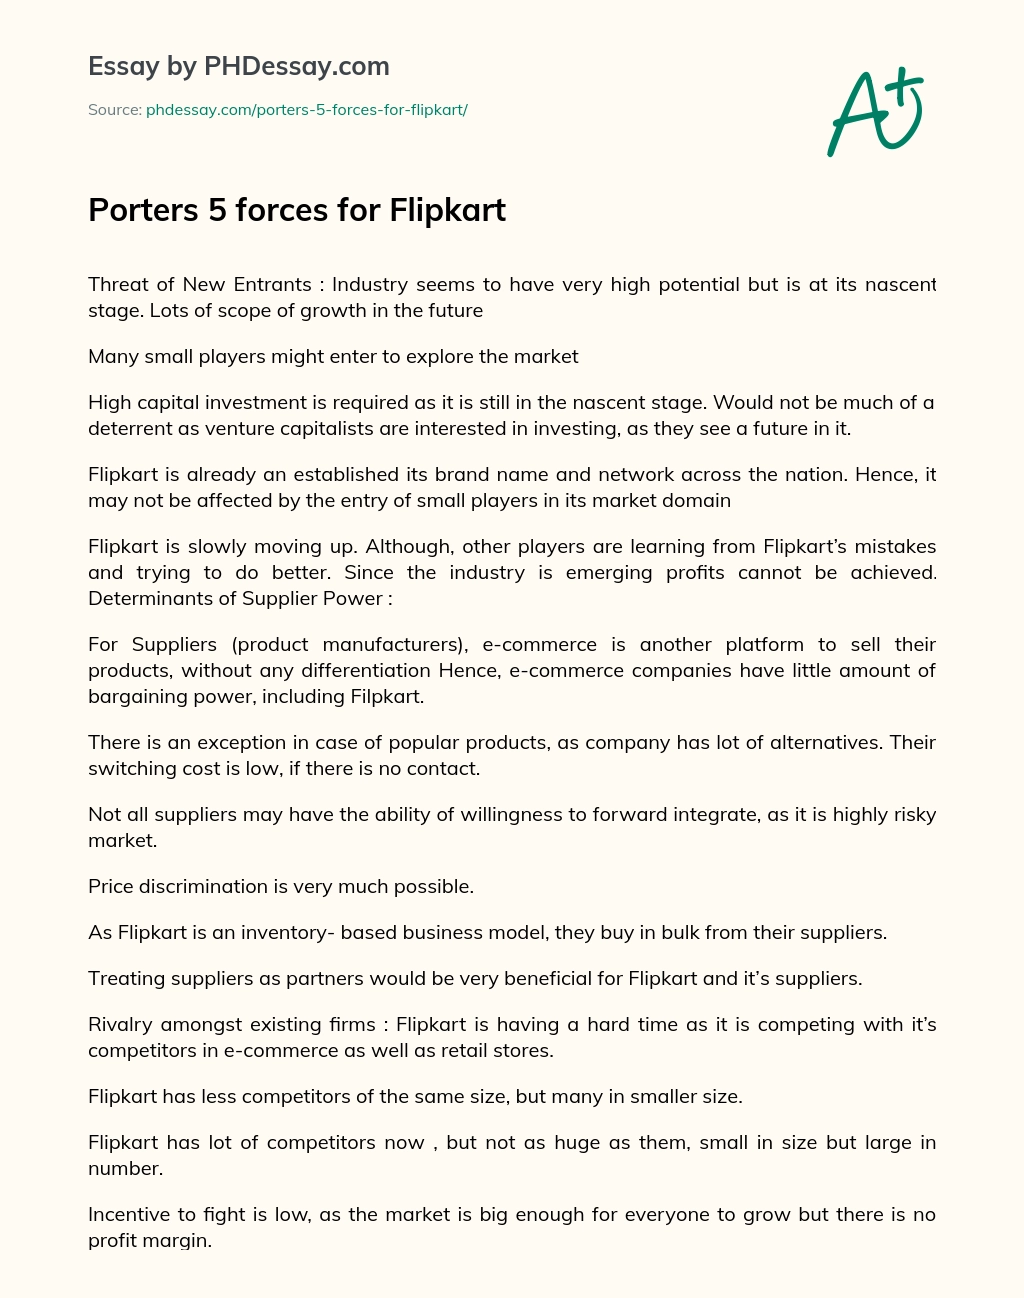 Porters 5 forces for Flipkart essay